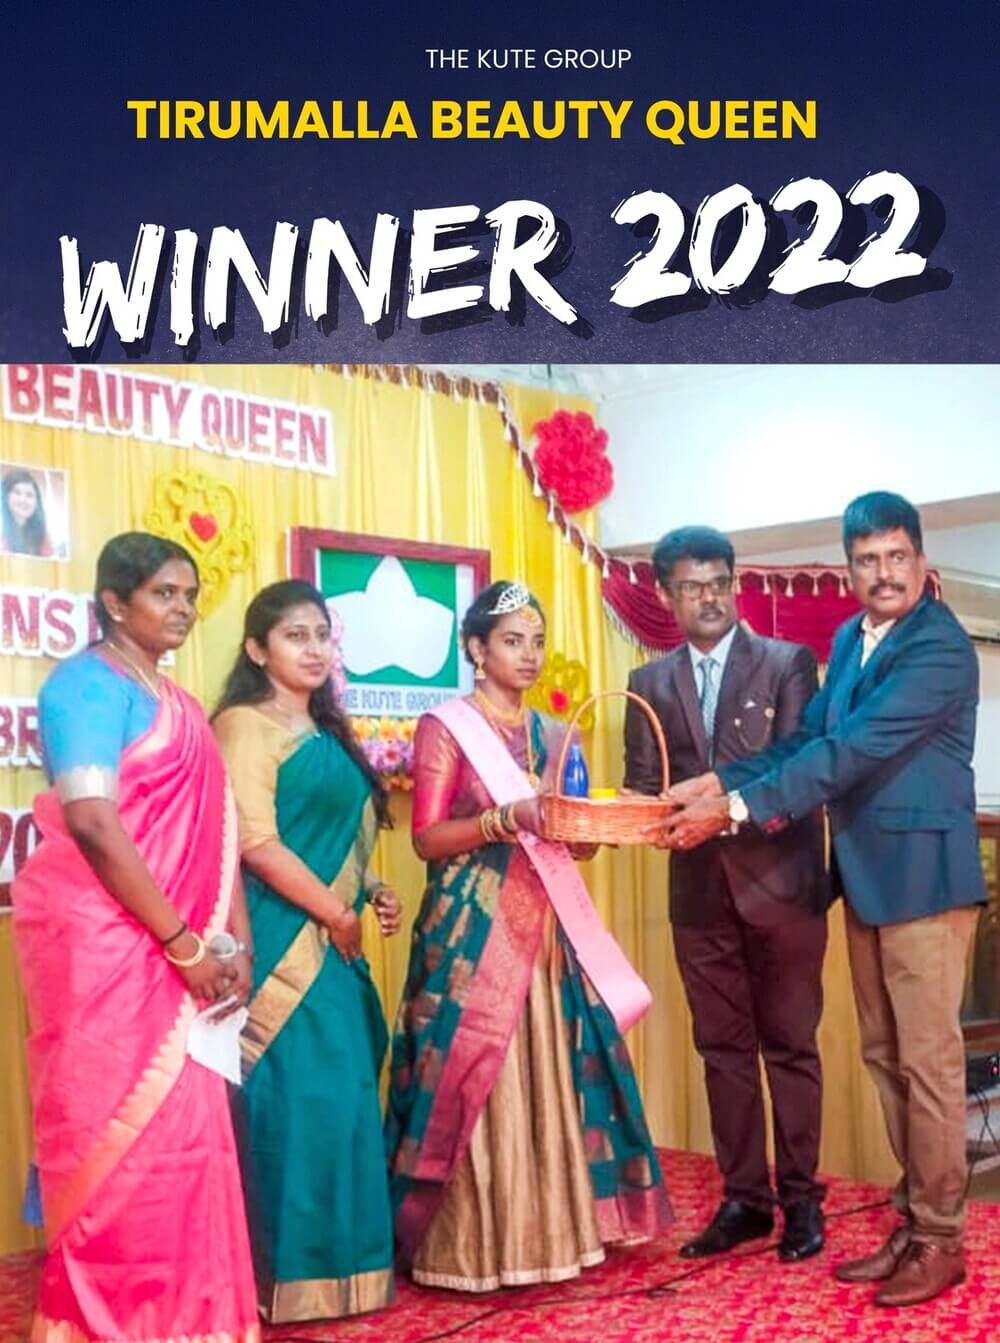 Tirumalla Beauty Queen Contest, Tamil Nadu